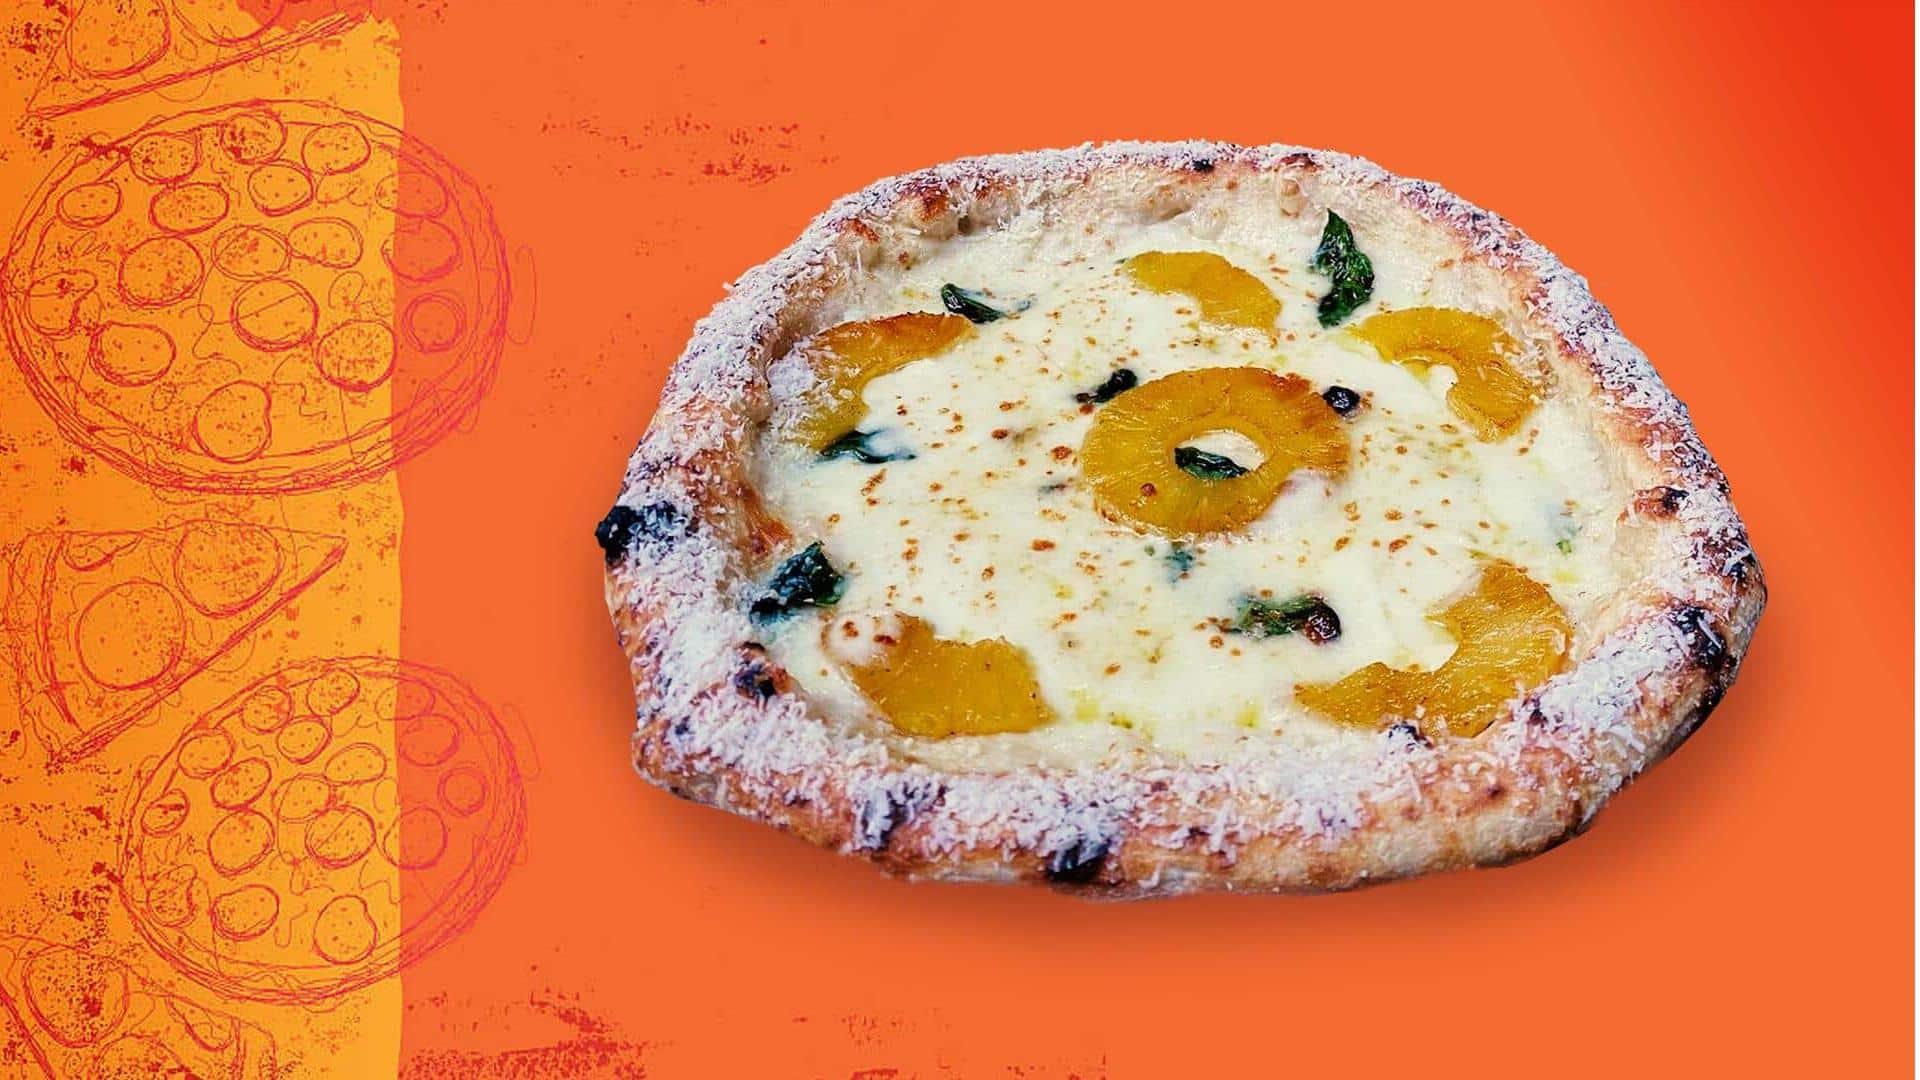 Pembuat pizza Italia memicu perdebatan setelah meluncurkan pizza nanas